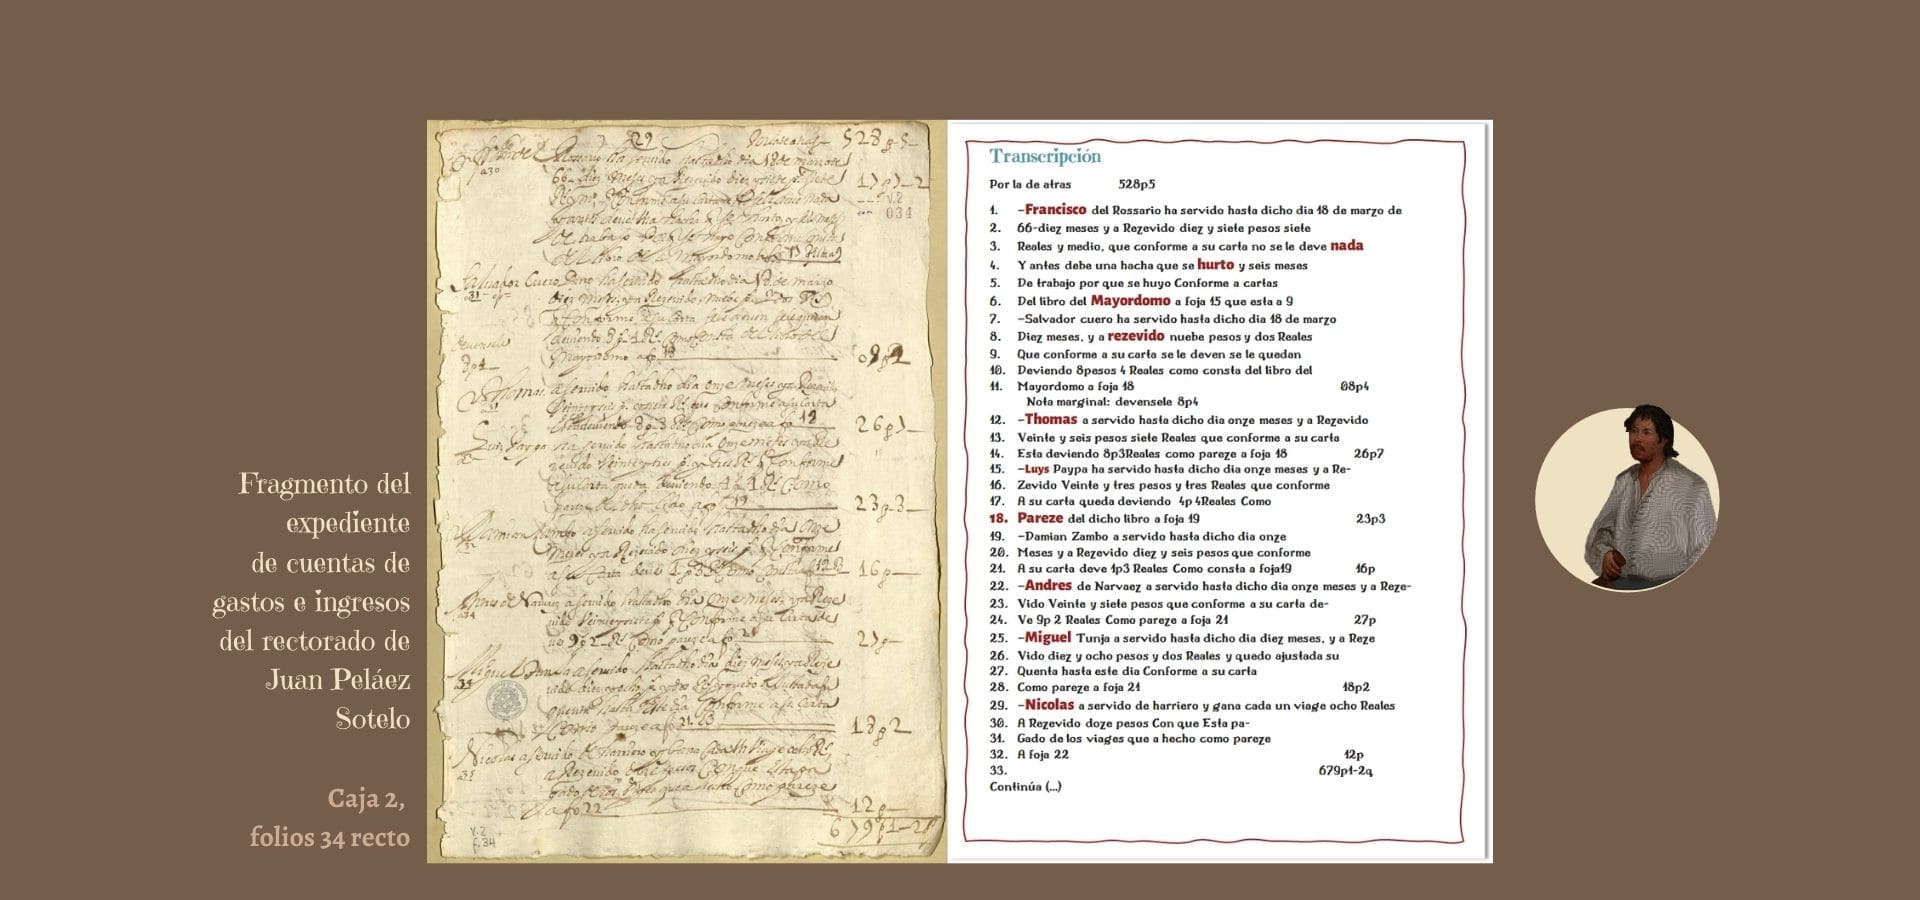 TranscripciÃ³n folio34 r